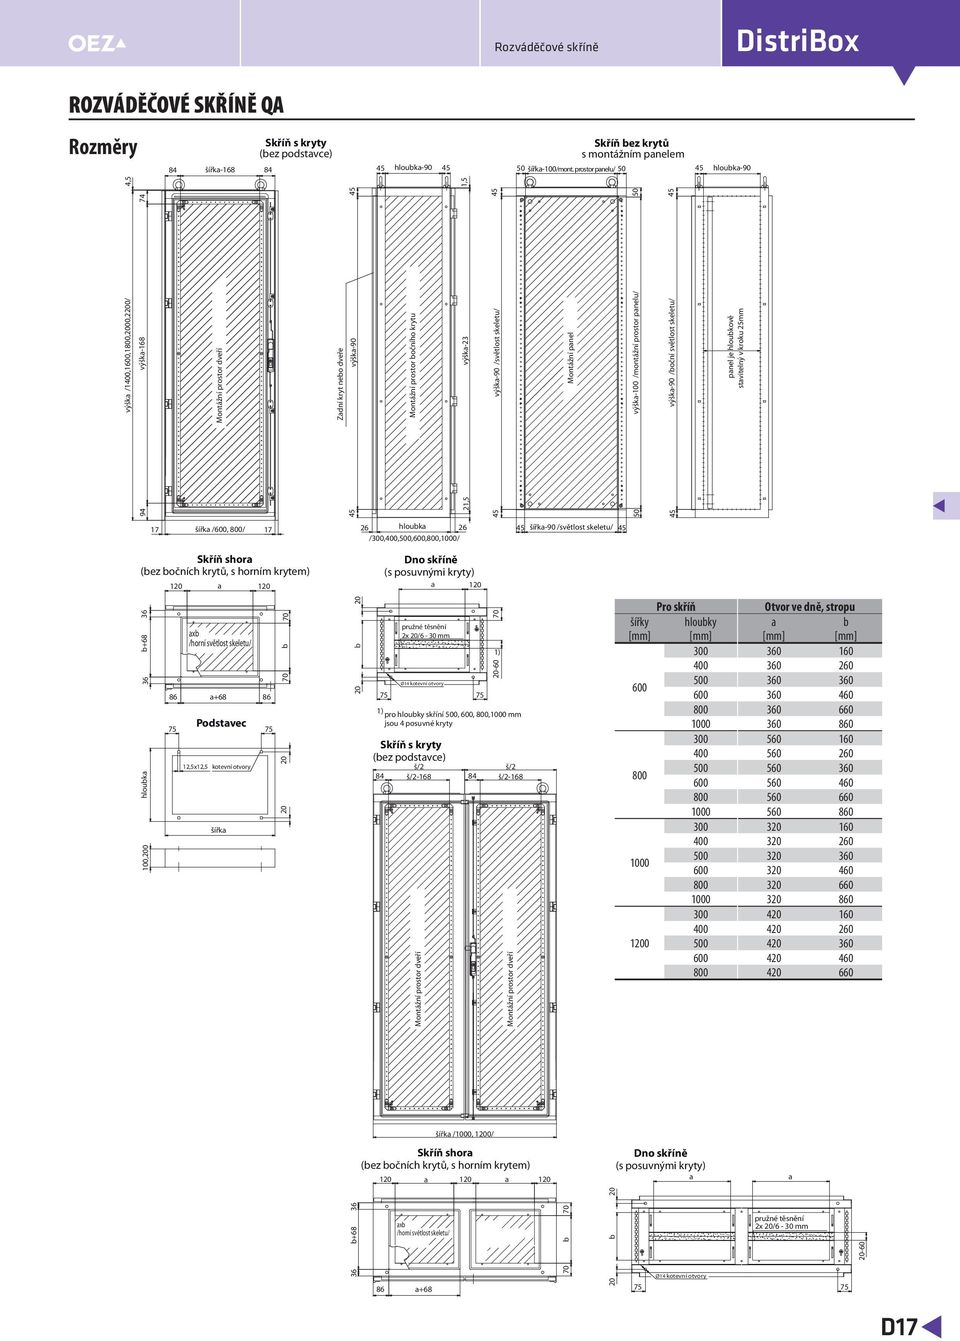 š/2-168 Montážní prostor dveří Montážní prostor dveří šířka /, / Skříň shora (bez bočních krytů, s horním krytem) 120 a 120 a 120 Dno skříně (s posuvnými kryty) a a 20 94 50 21,5 výška